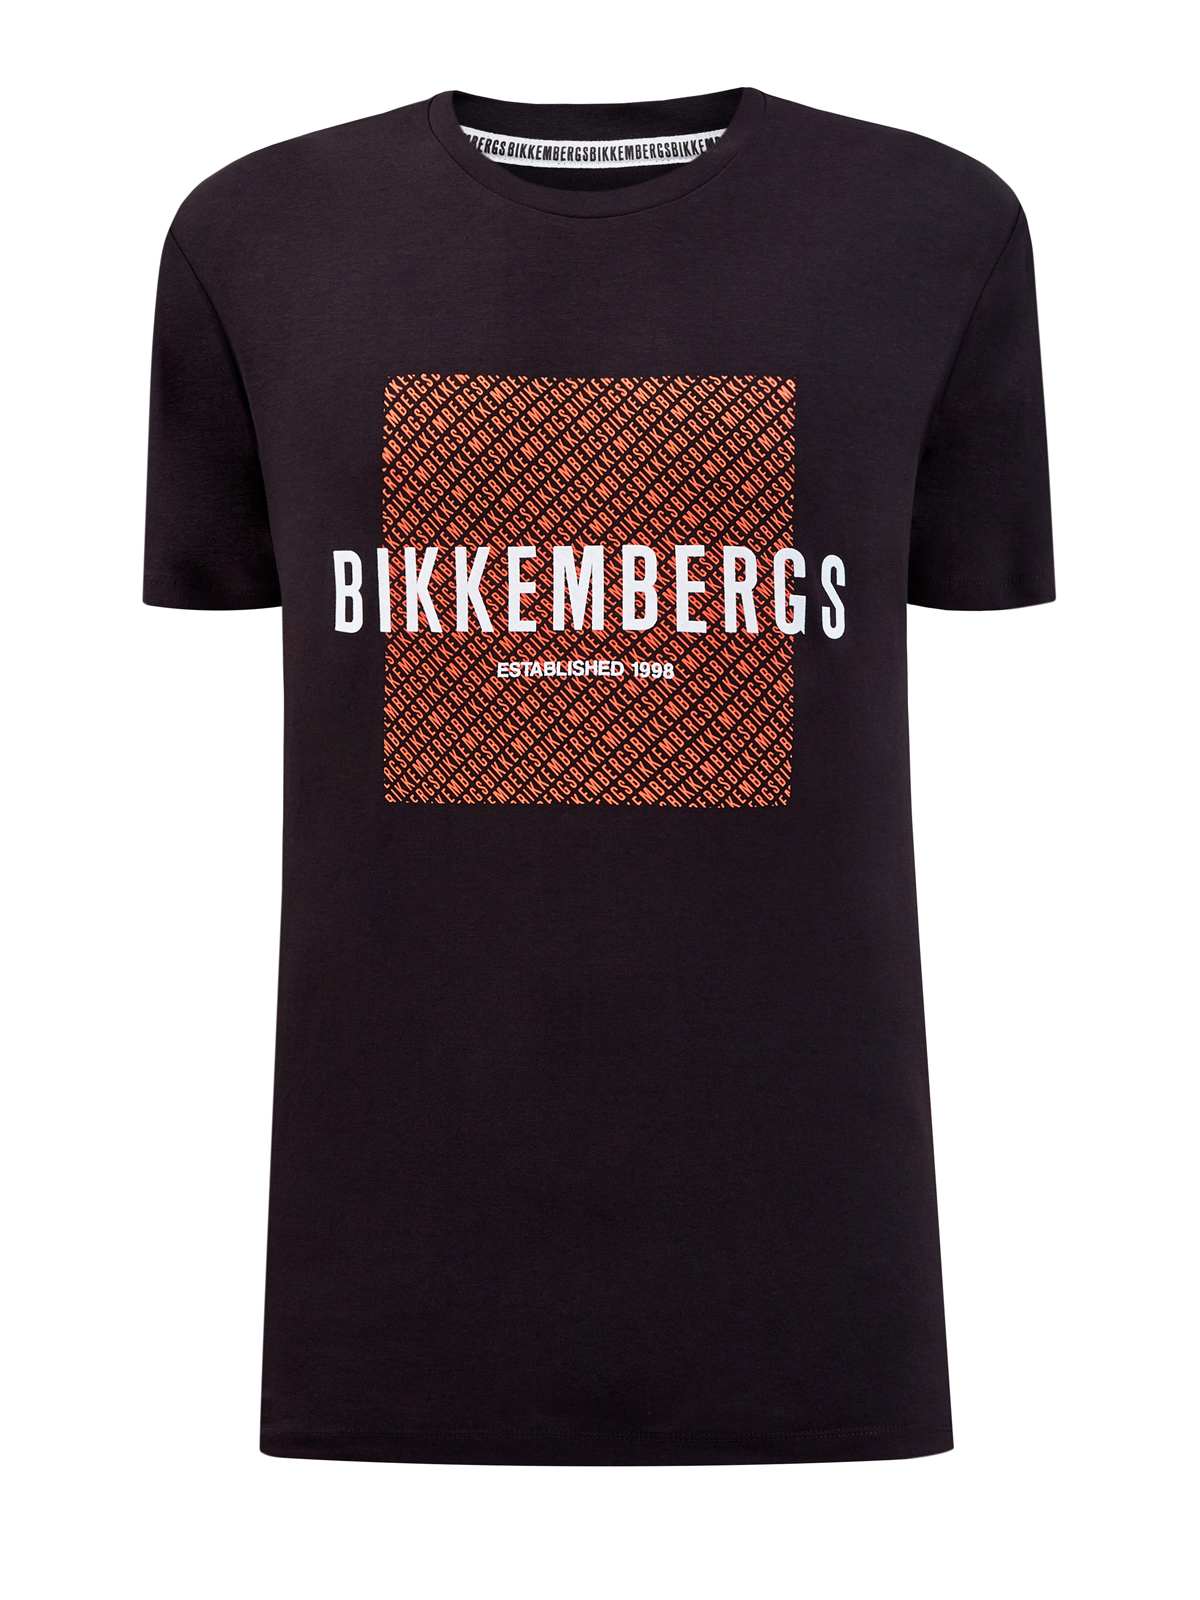 Черная футболка из хлопкового джерси с принтом BIKKEMBERGS, цвет черный, размер M;L;XL;2XL - фото 1